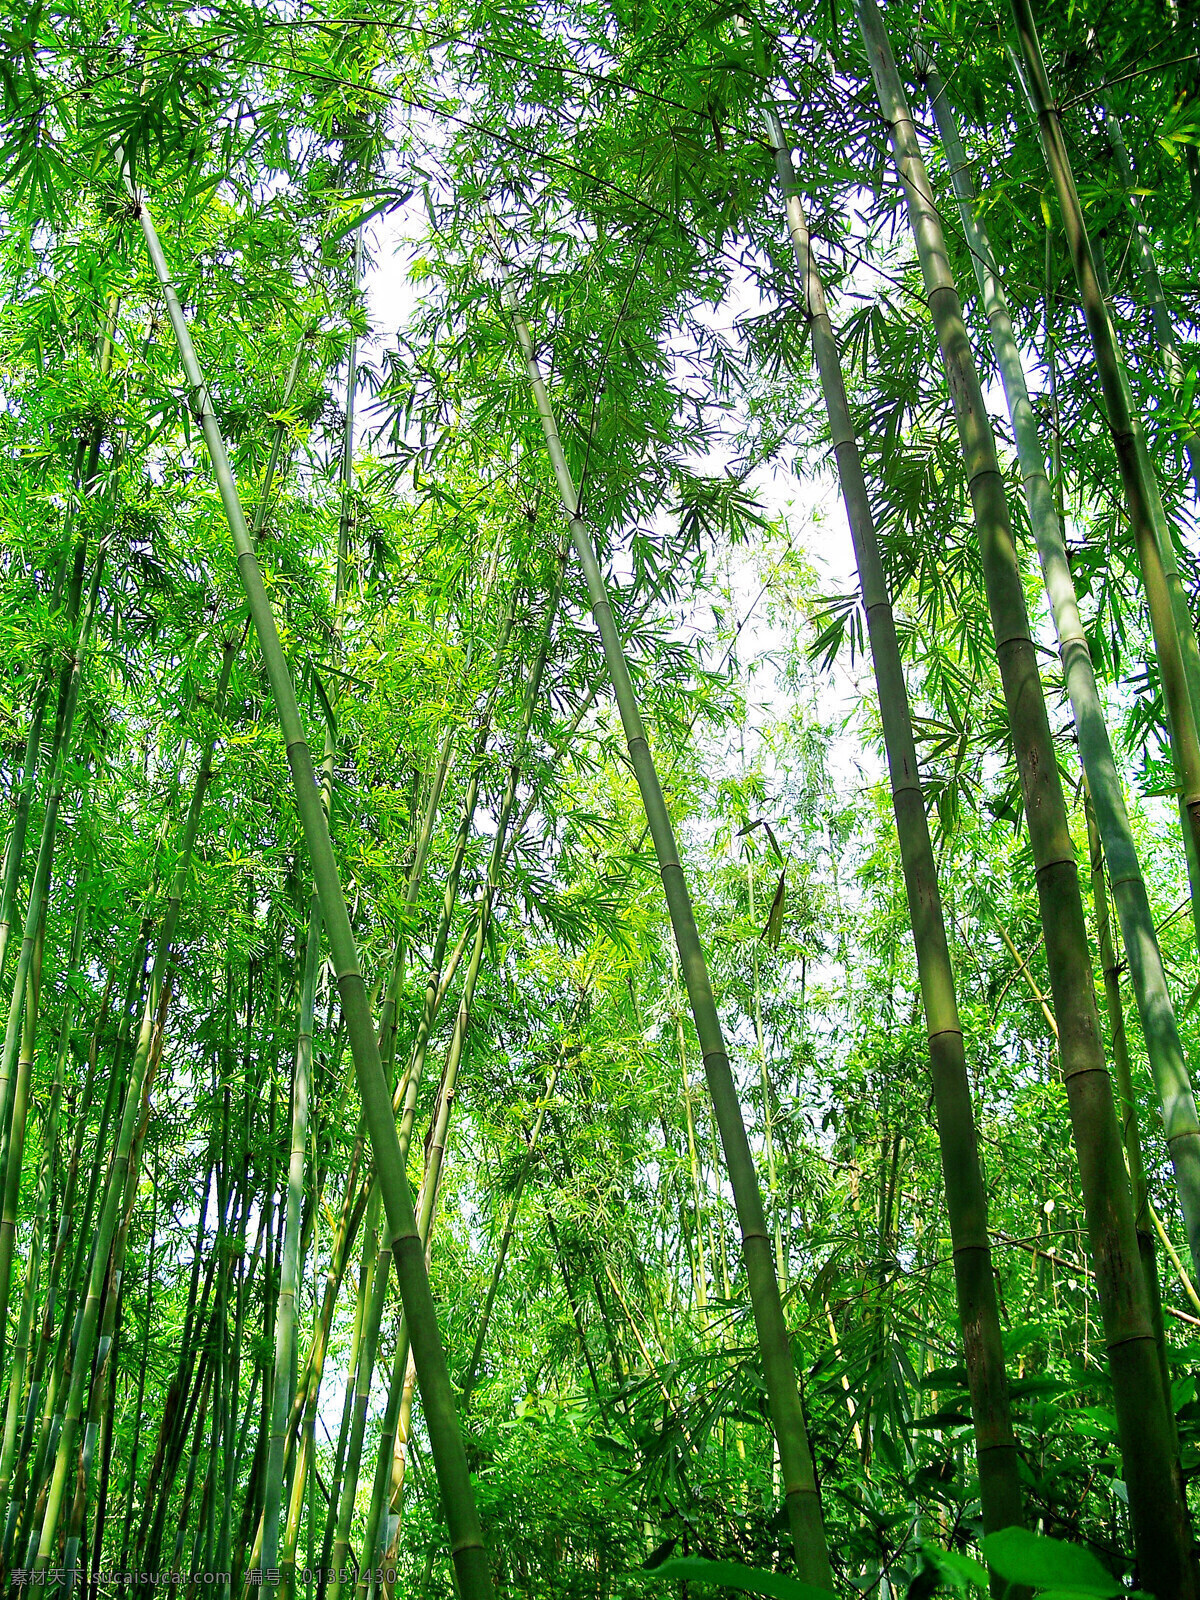 绿色竹海 竹林 山林 森林 竹子 绿色竹林 绿色竹子 竹林素材 林间小道 树林风光 山路 树林 绿色 照片 游玩 风景 自然景观 自然风景